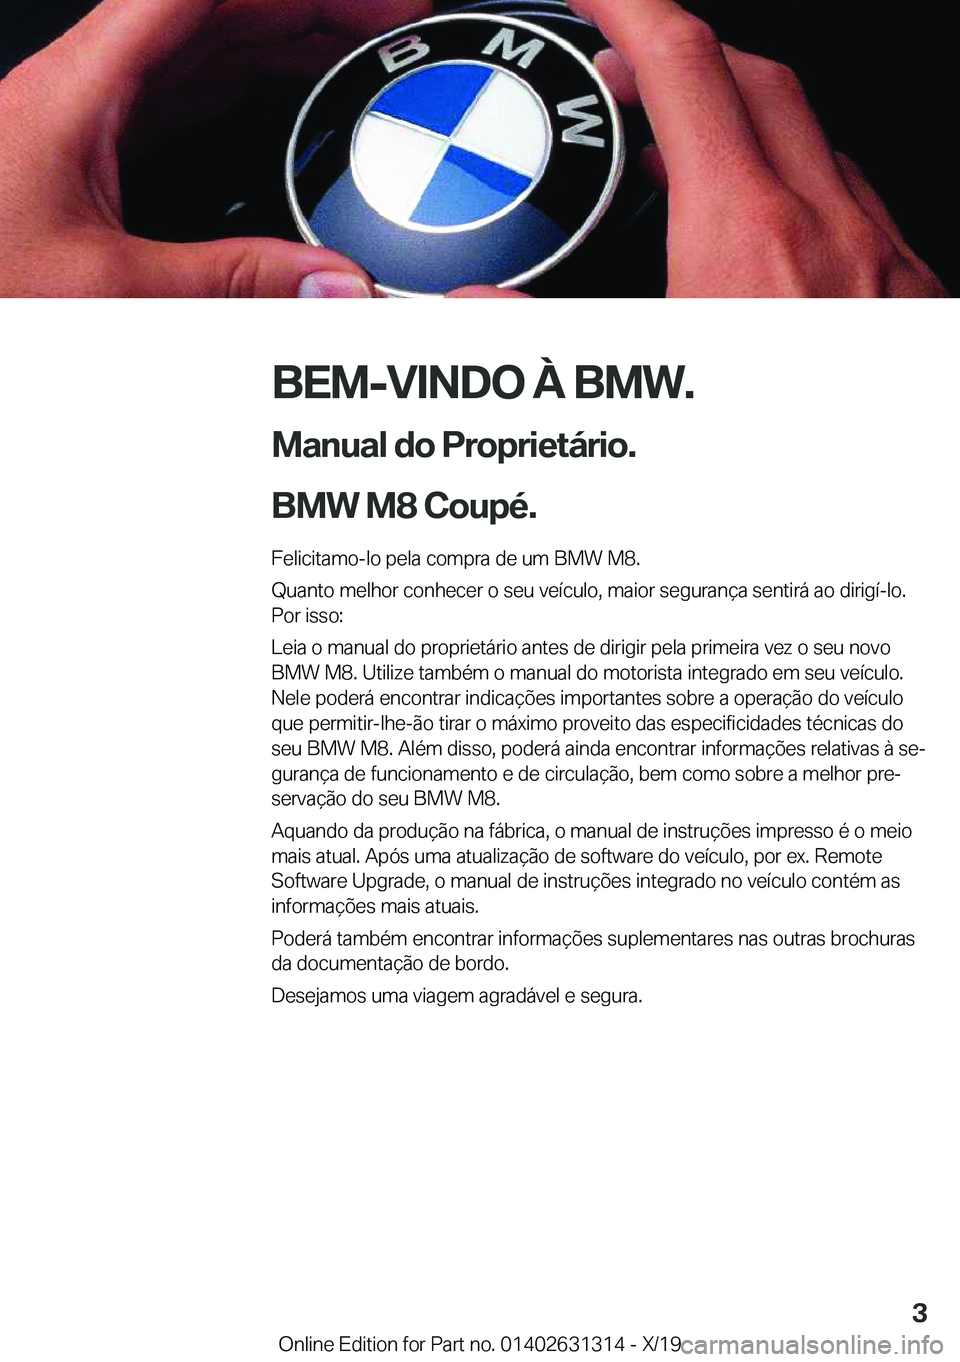 BMW M8 2020  Manual do condutor (in Portuguese) �B�E�M�-�V�I�N�D�O��À��B�M�W�.
�M�a�n�u�a�l��d�o��P�r�o�p�r�i�e�t�á�r�i�o�.
�B�M�W��M�8��C�o�u�p�é�. �F�e�l�i�c�i�t�a�m�o�-�l�o��p�e�l�a��c�o�m�p�r�a��d�e��u�m��B�M�W��M�8�.
�Q�u�a�n�t�